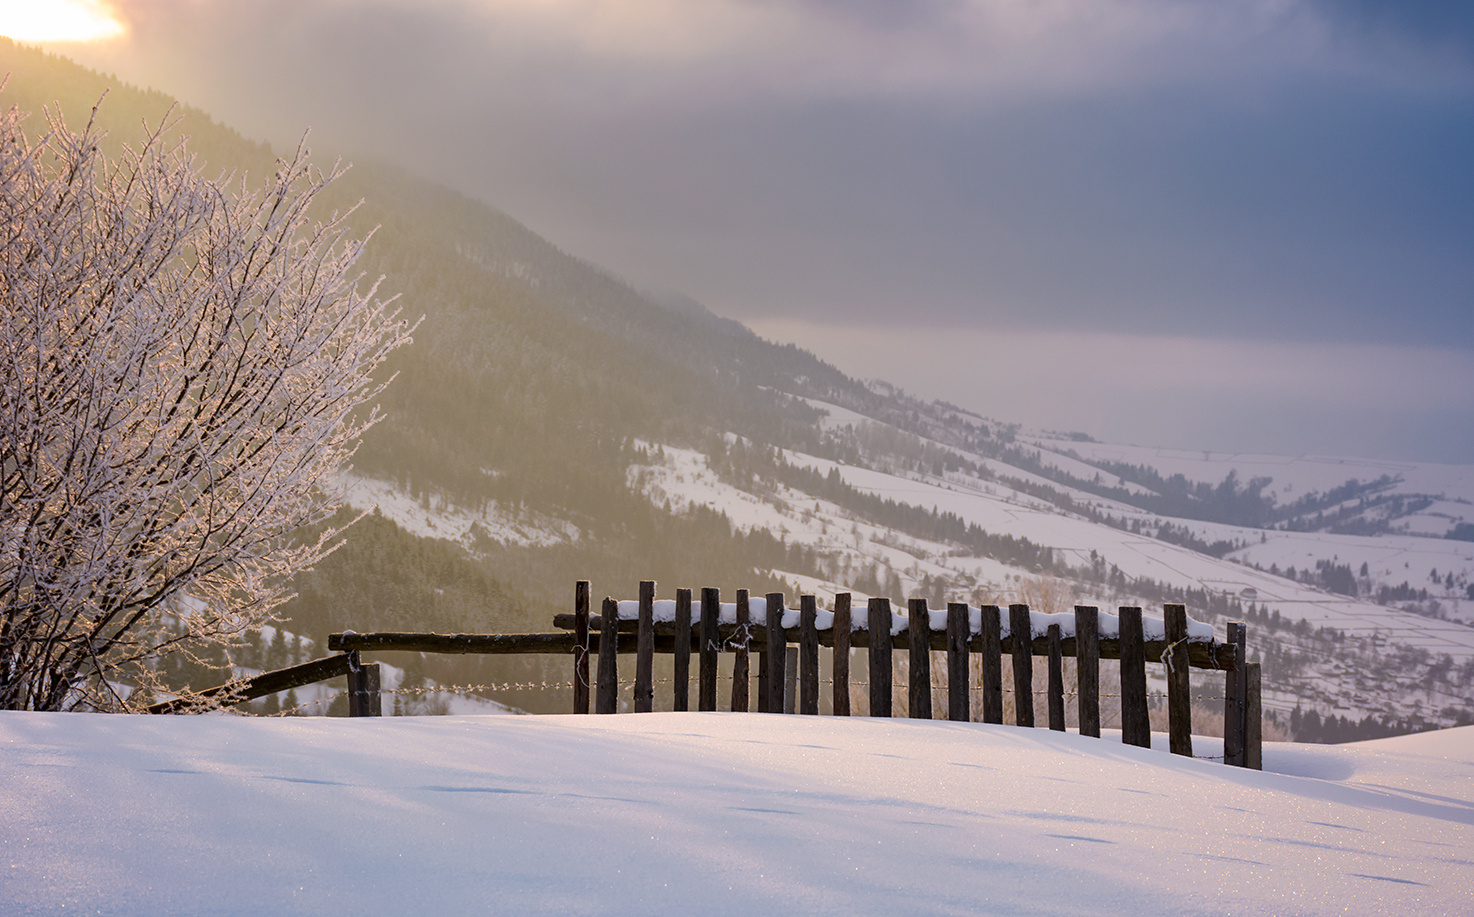 *** восход солнца зима пейзаж сельский забор теплый поле снег утро гора сельская местность деревянный пурпурный облачный красивый покрытый площадь хребет луг природа открытый величественный закат захватывающий драматический яркий волшебный великолепный долина